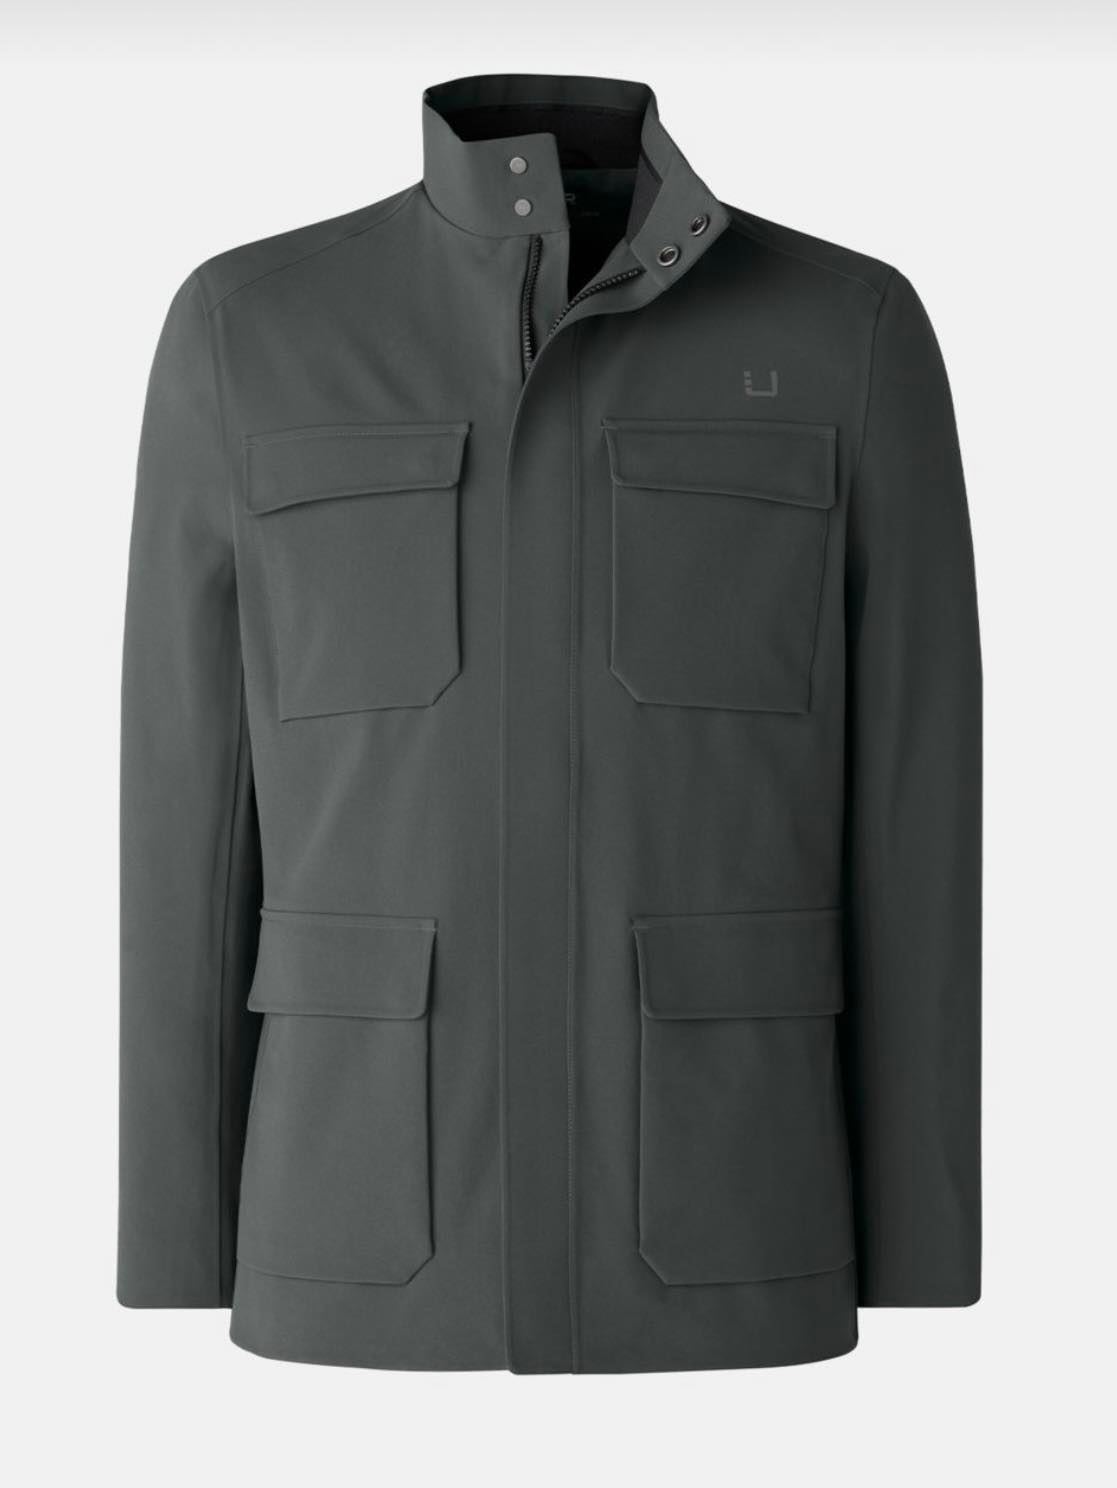 UBR Charger jacket - Olive